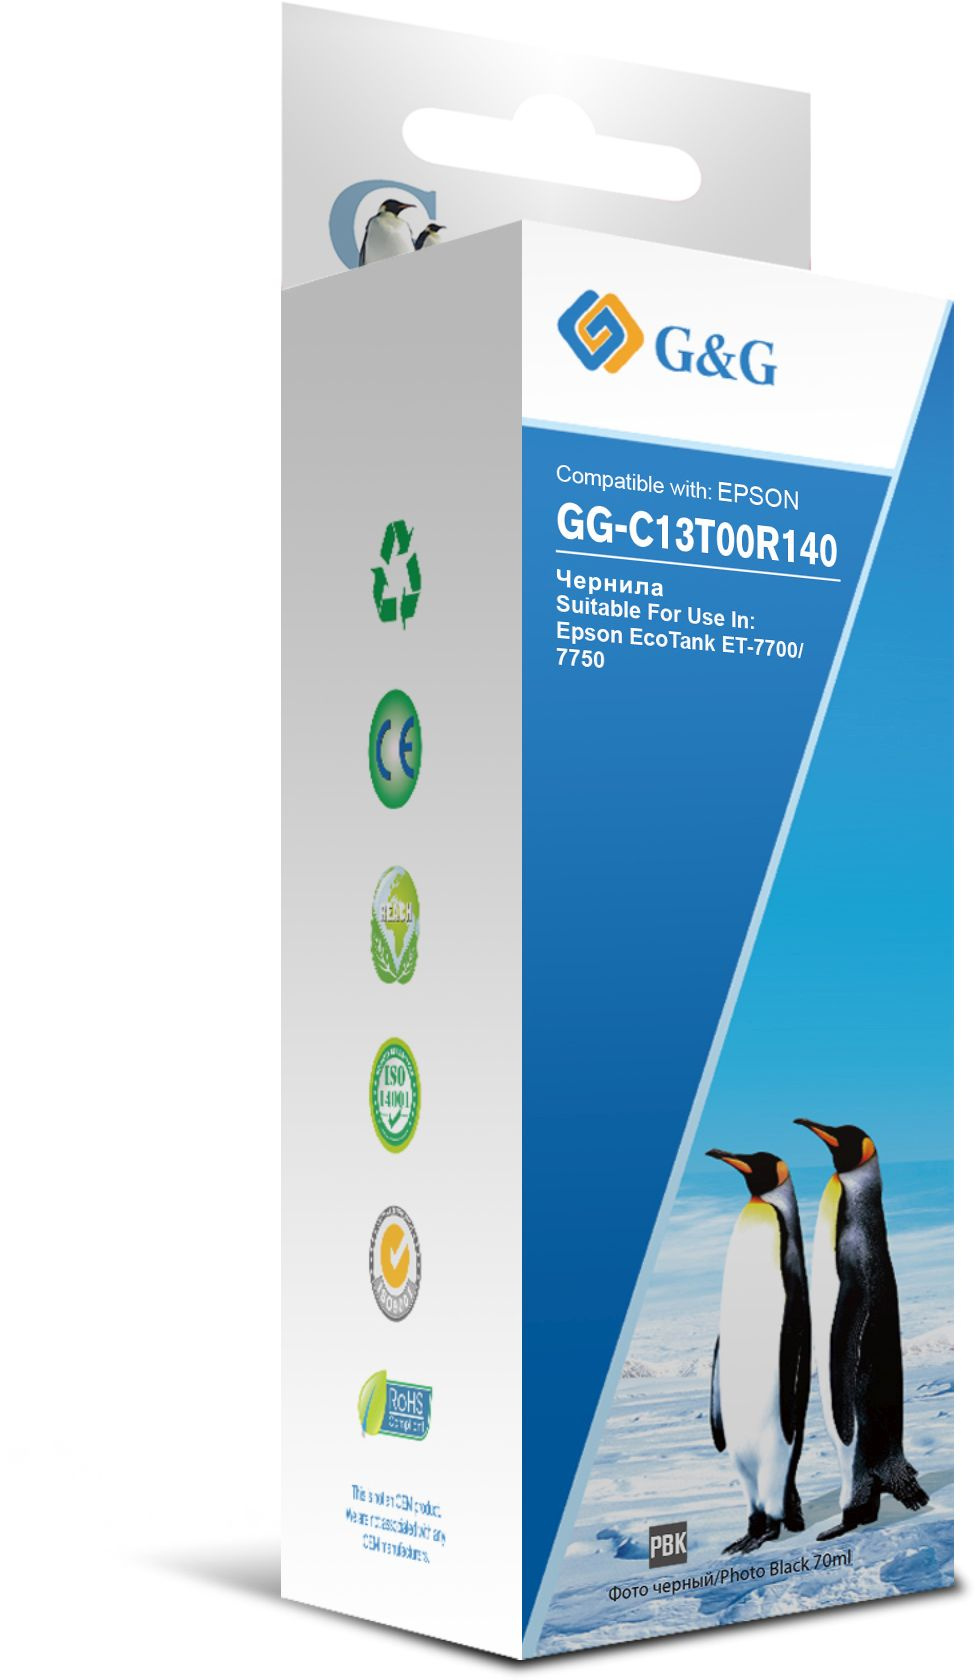 Чернила G&G GG-C13T00R140 фото черный 70мл для Epson EcoTank 7700/7750